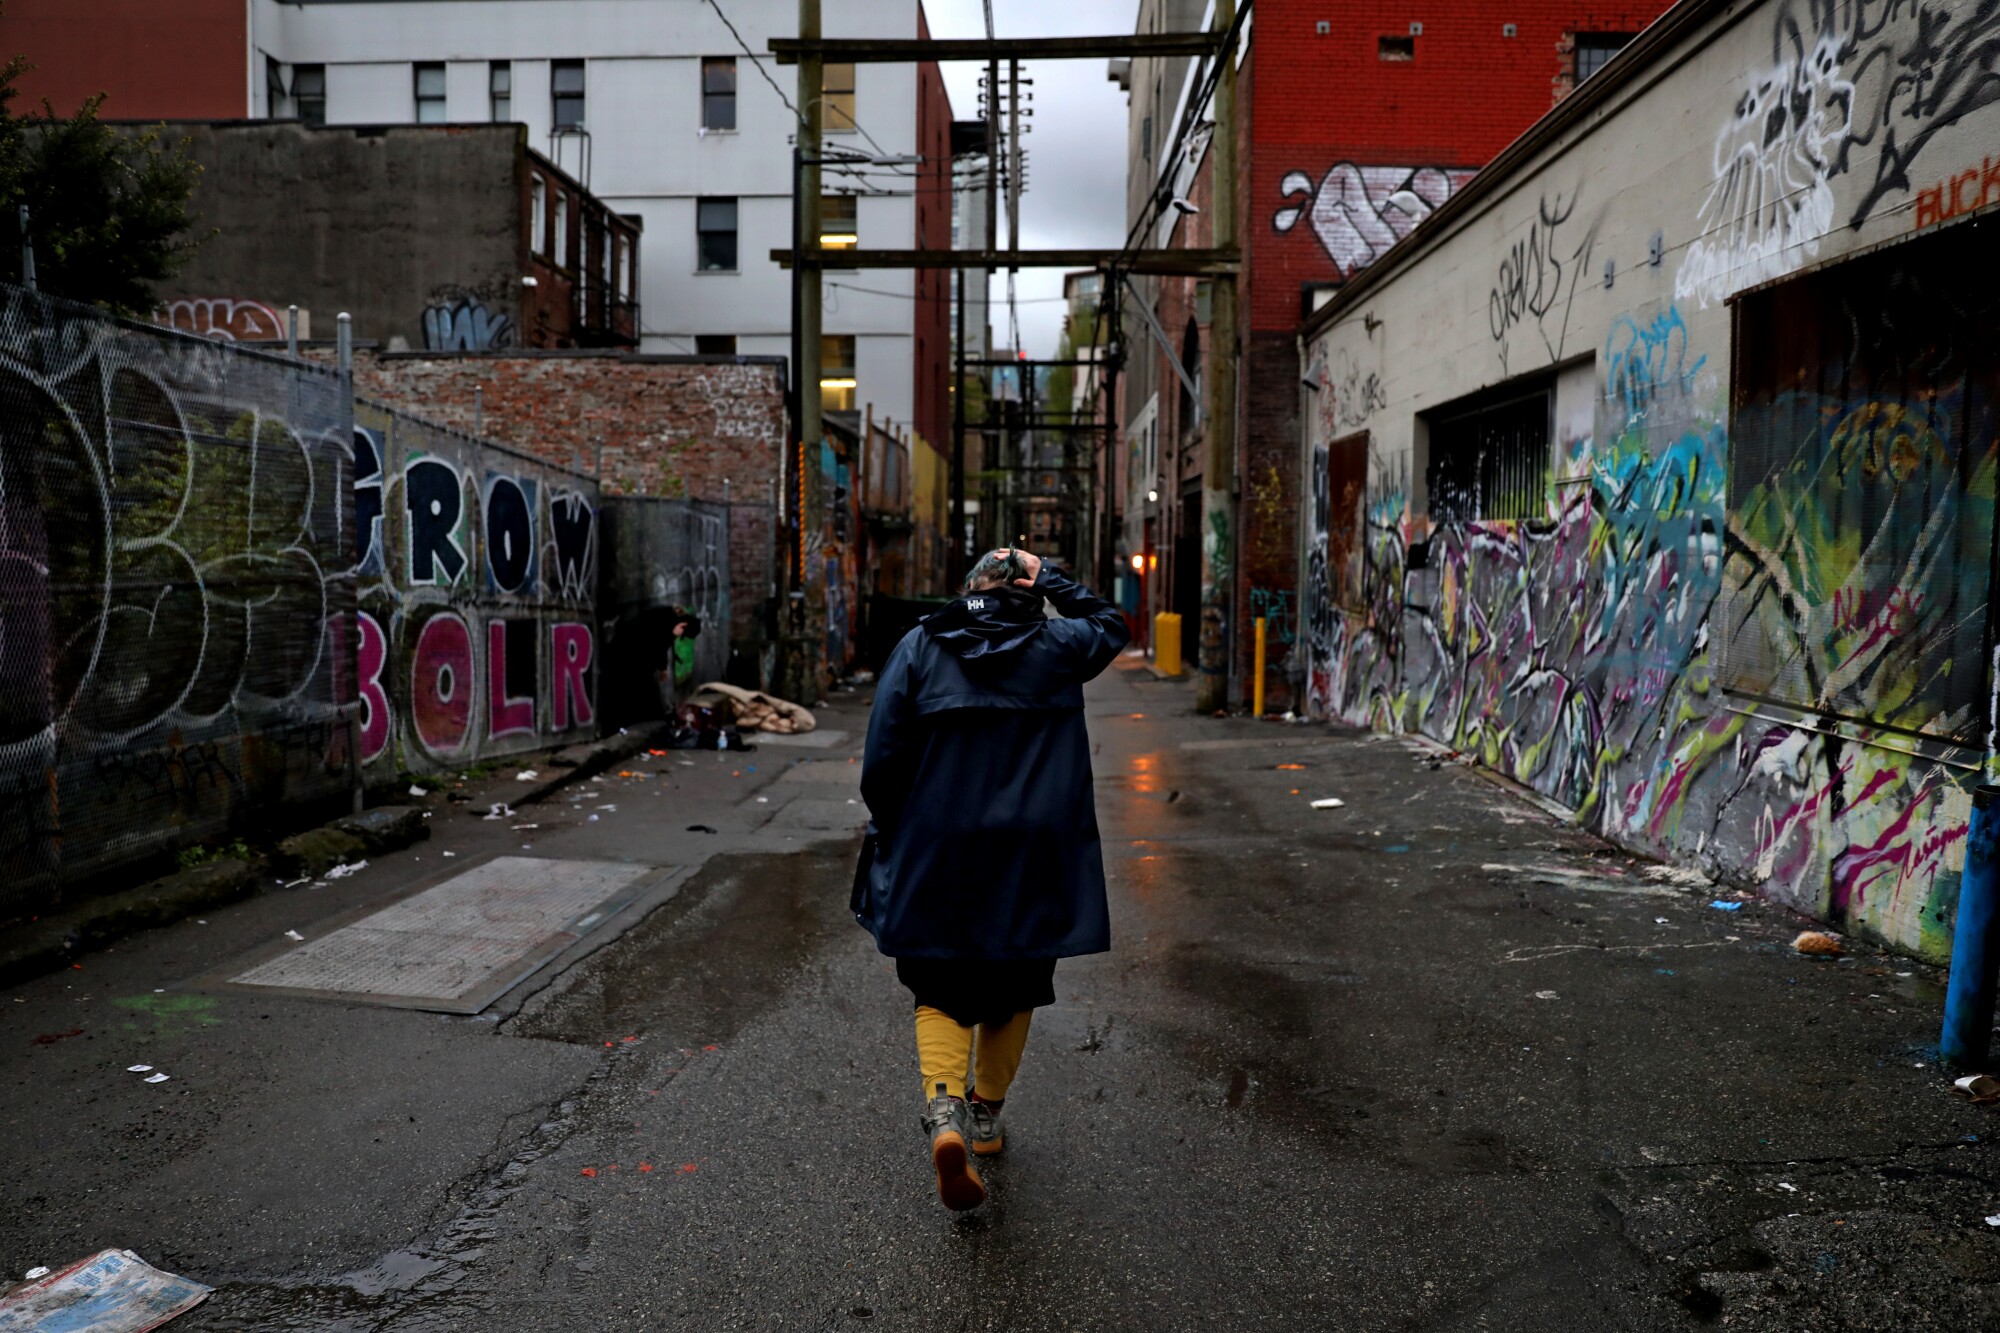 A woman walks down an alley